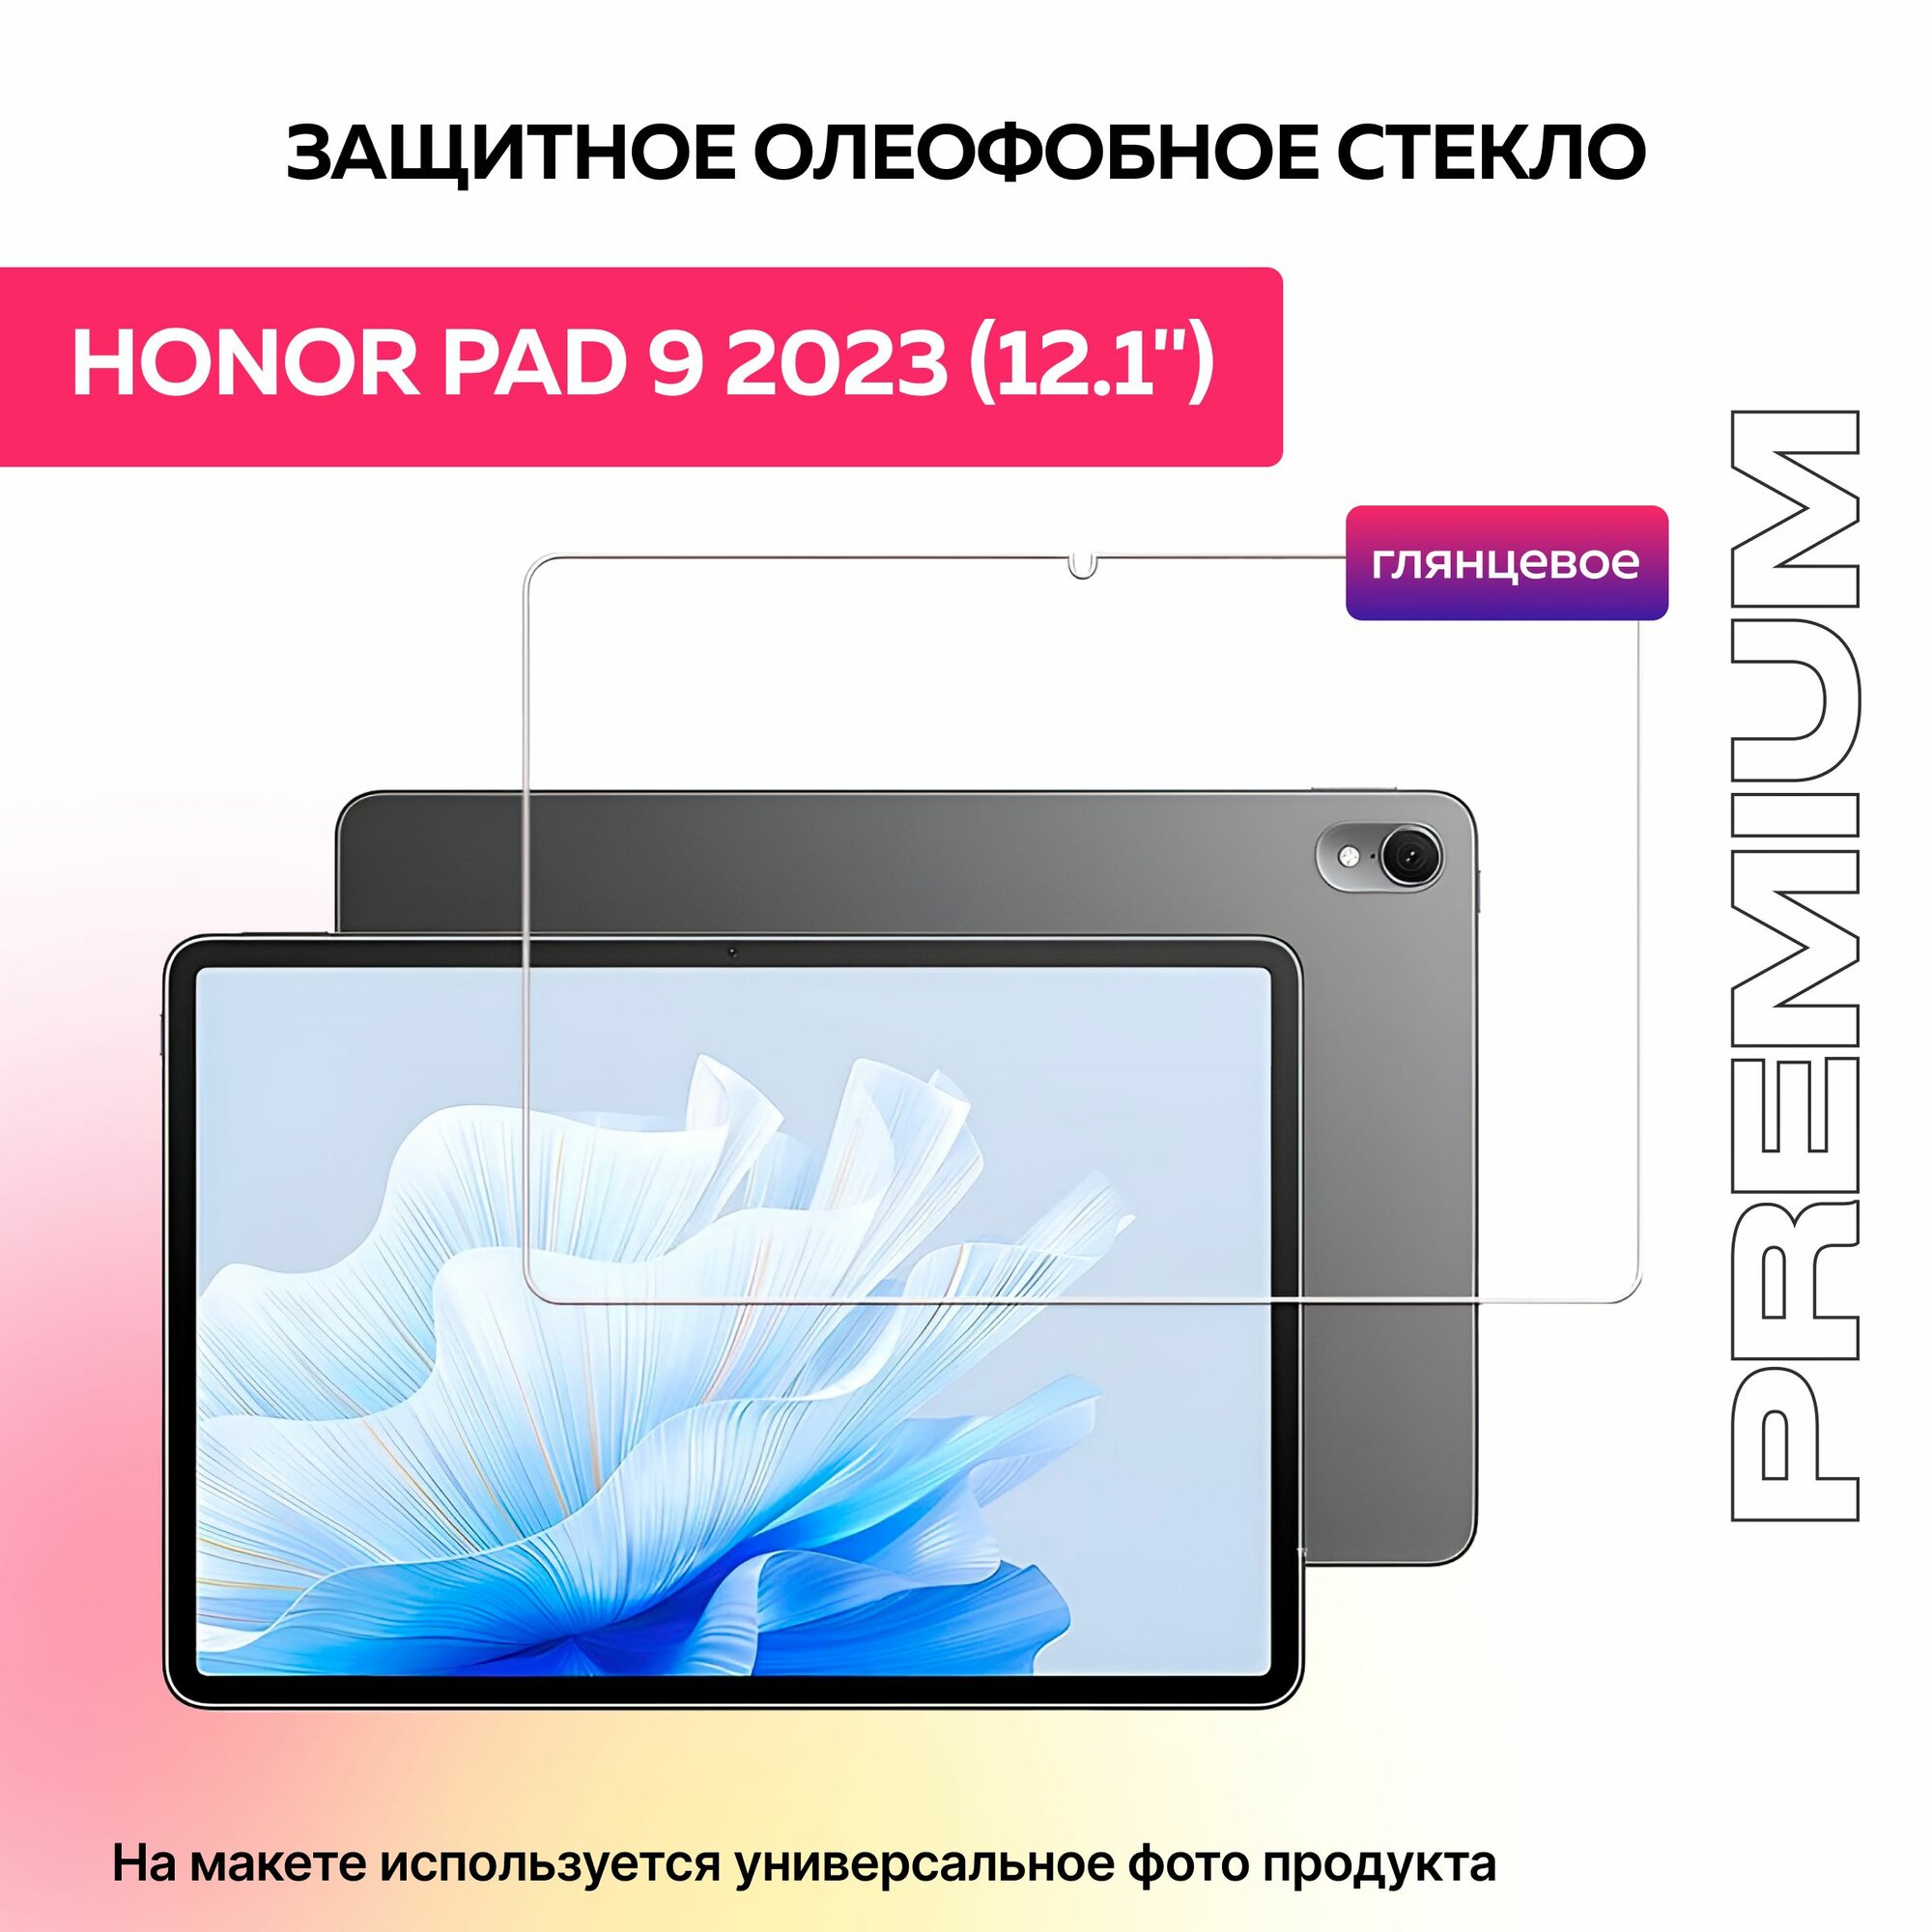 Защитное олеофобное стекло для планшета Honor Pad 9 12.1" дюймов